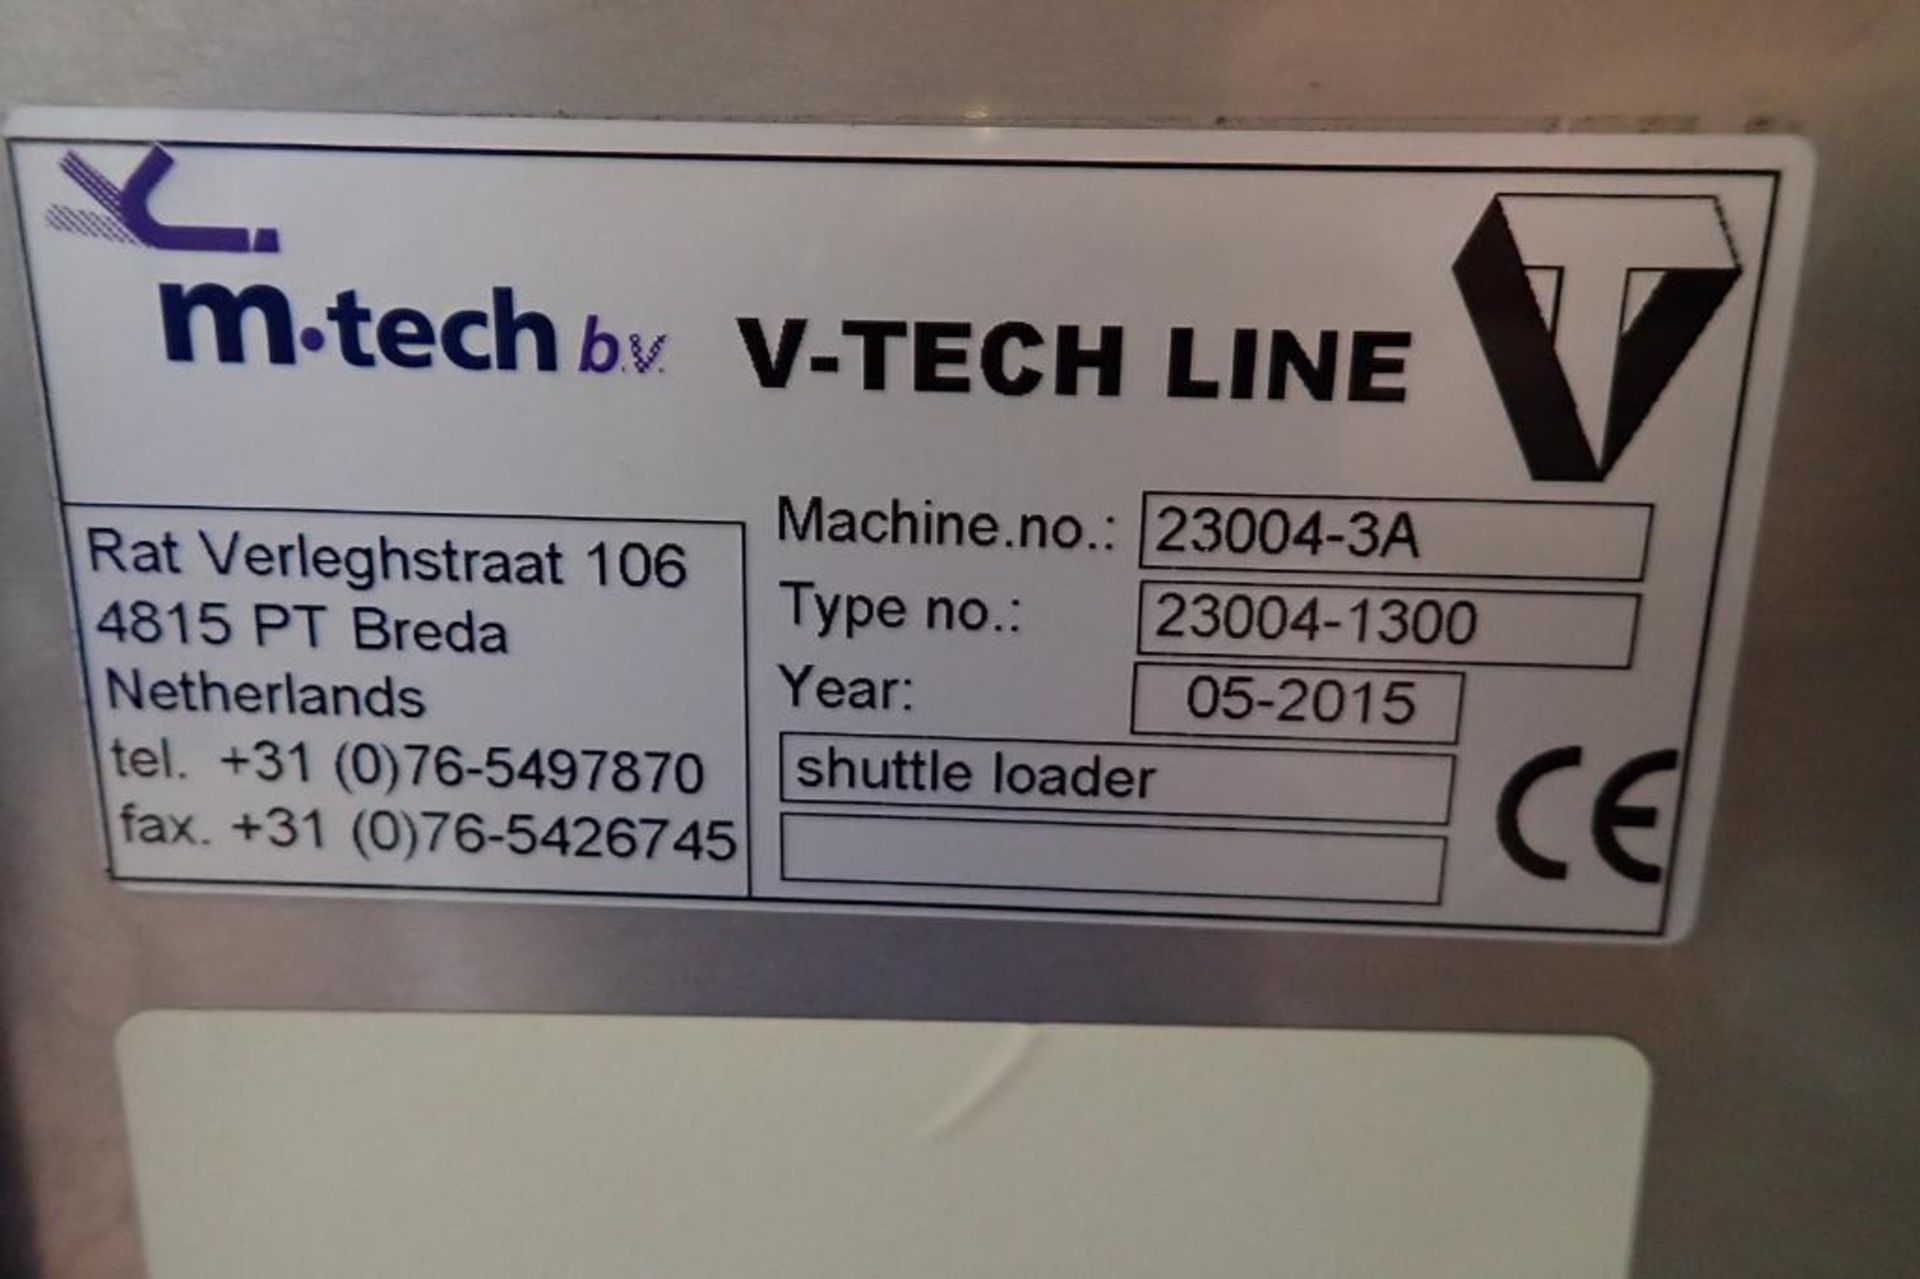 2015 M-tech shuttle loader, Type 23004-1300, SN 23004-3A, white vinyl extendable belt 45 in. long - Image 17 of 17